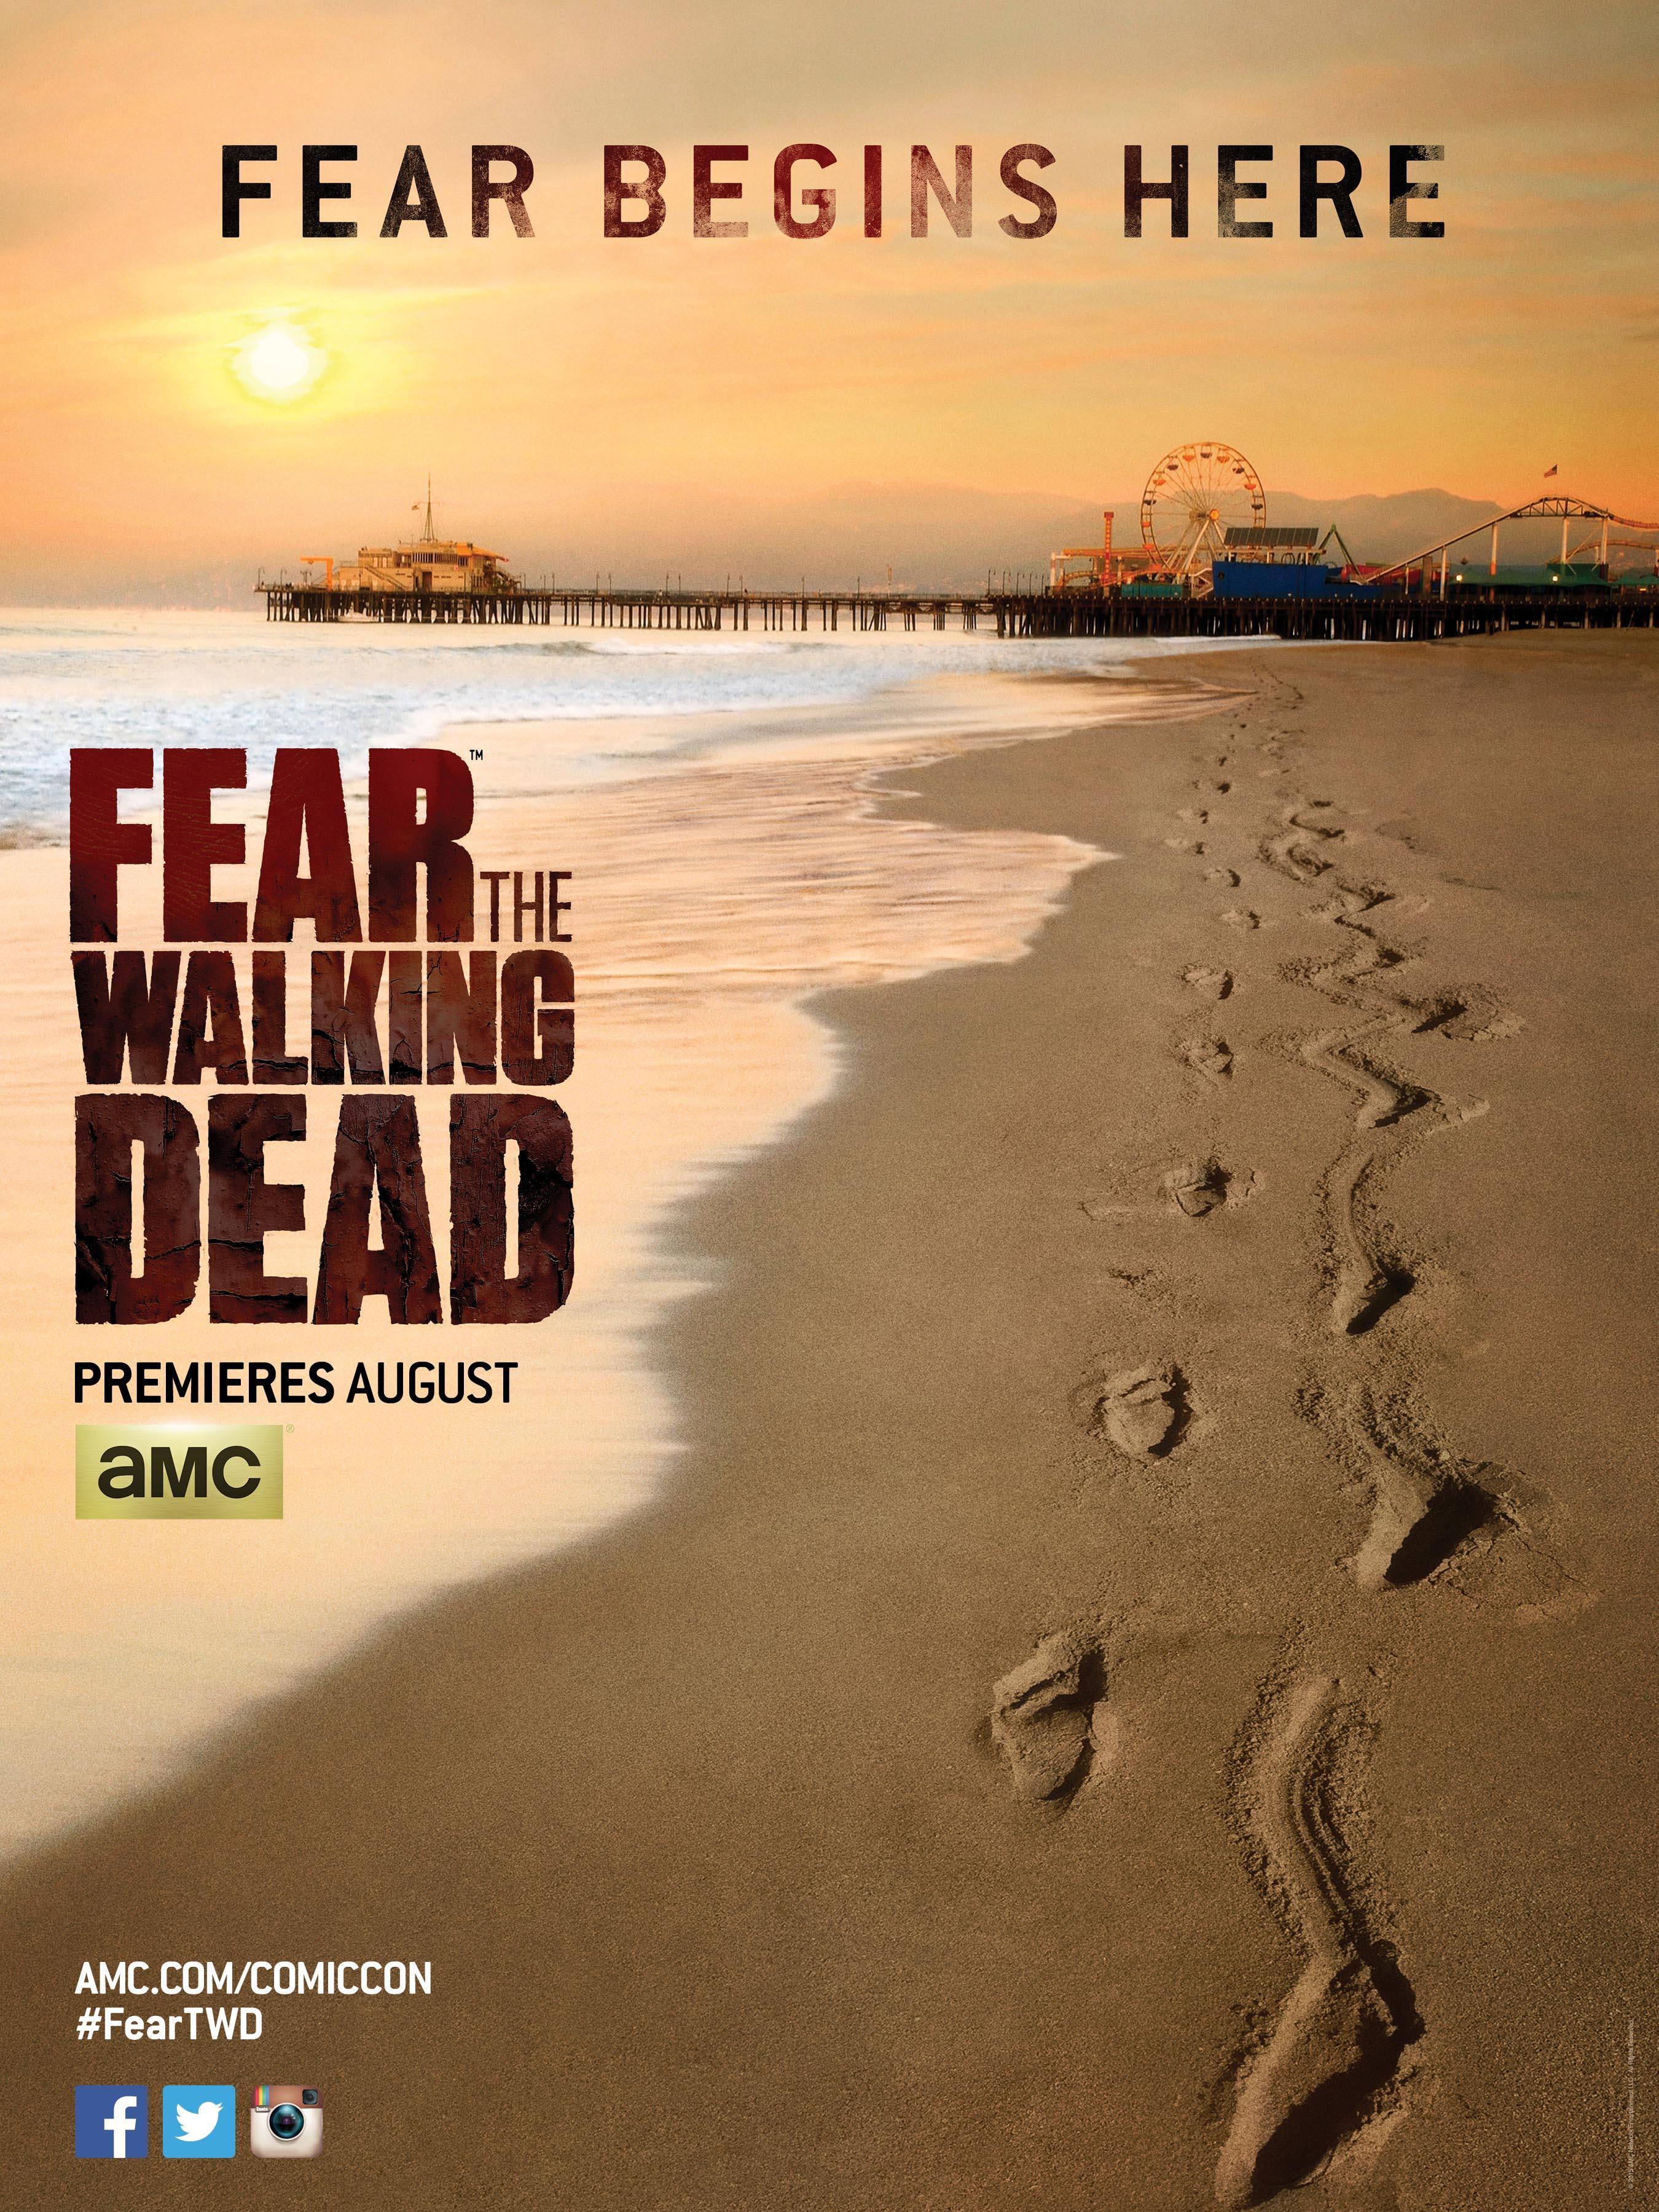 Постер фильма Бойтесь ходячих мертвецов | Fear the Walking Dead